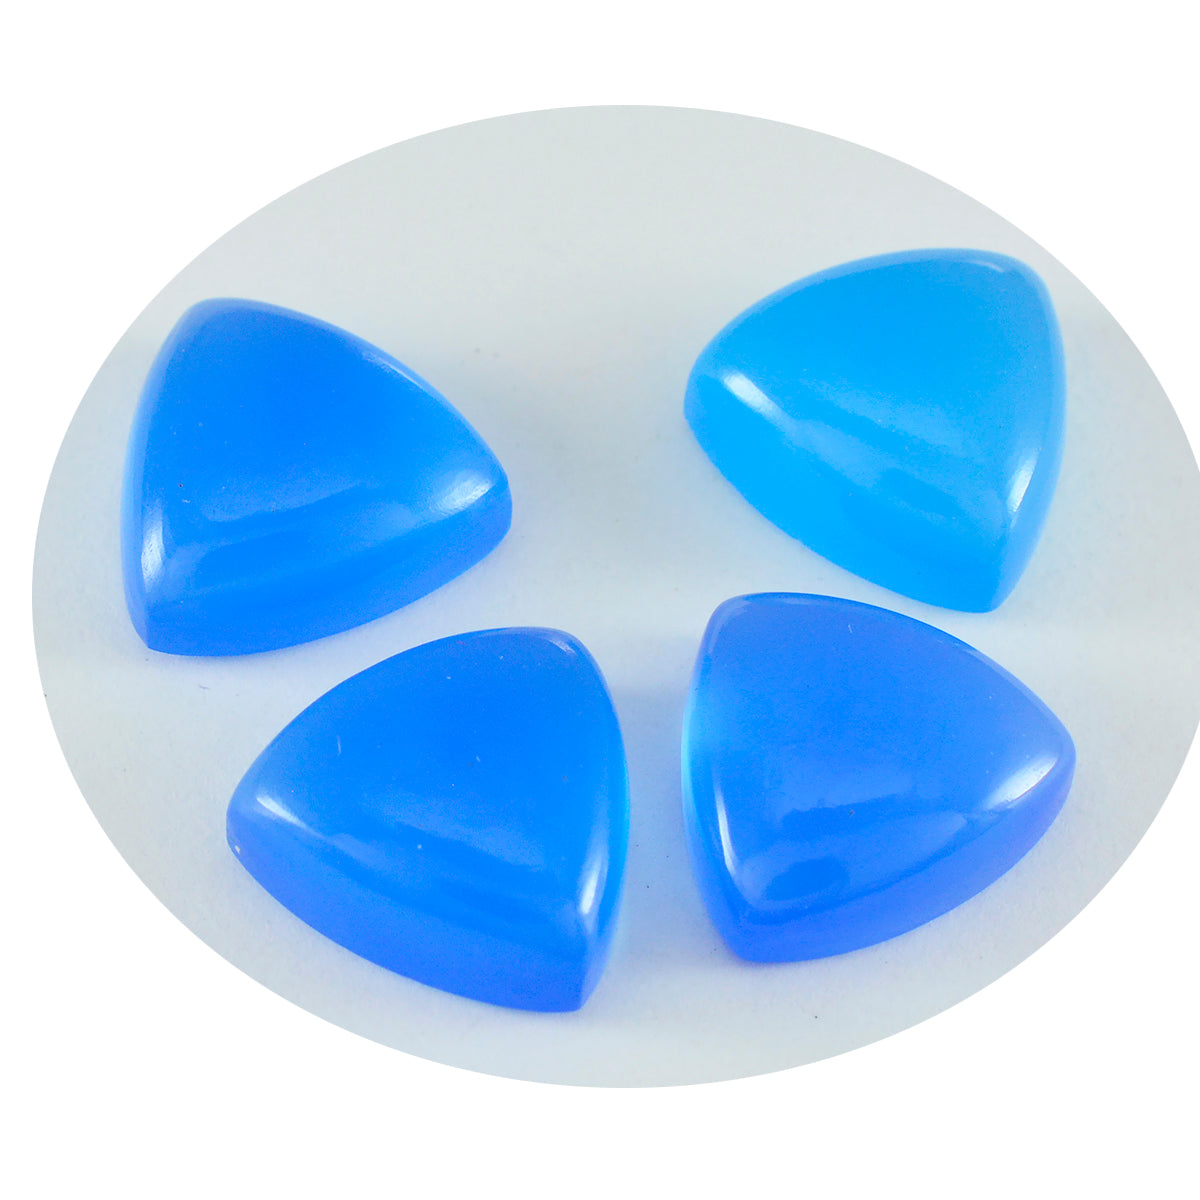 riyogems 1pc calcédoine bleue cabochon 9x9 mm forme trillion mignon qualité pierre précieuse en vrac